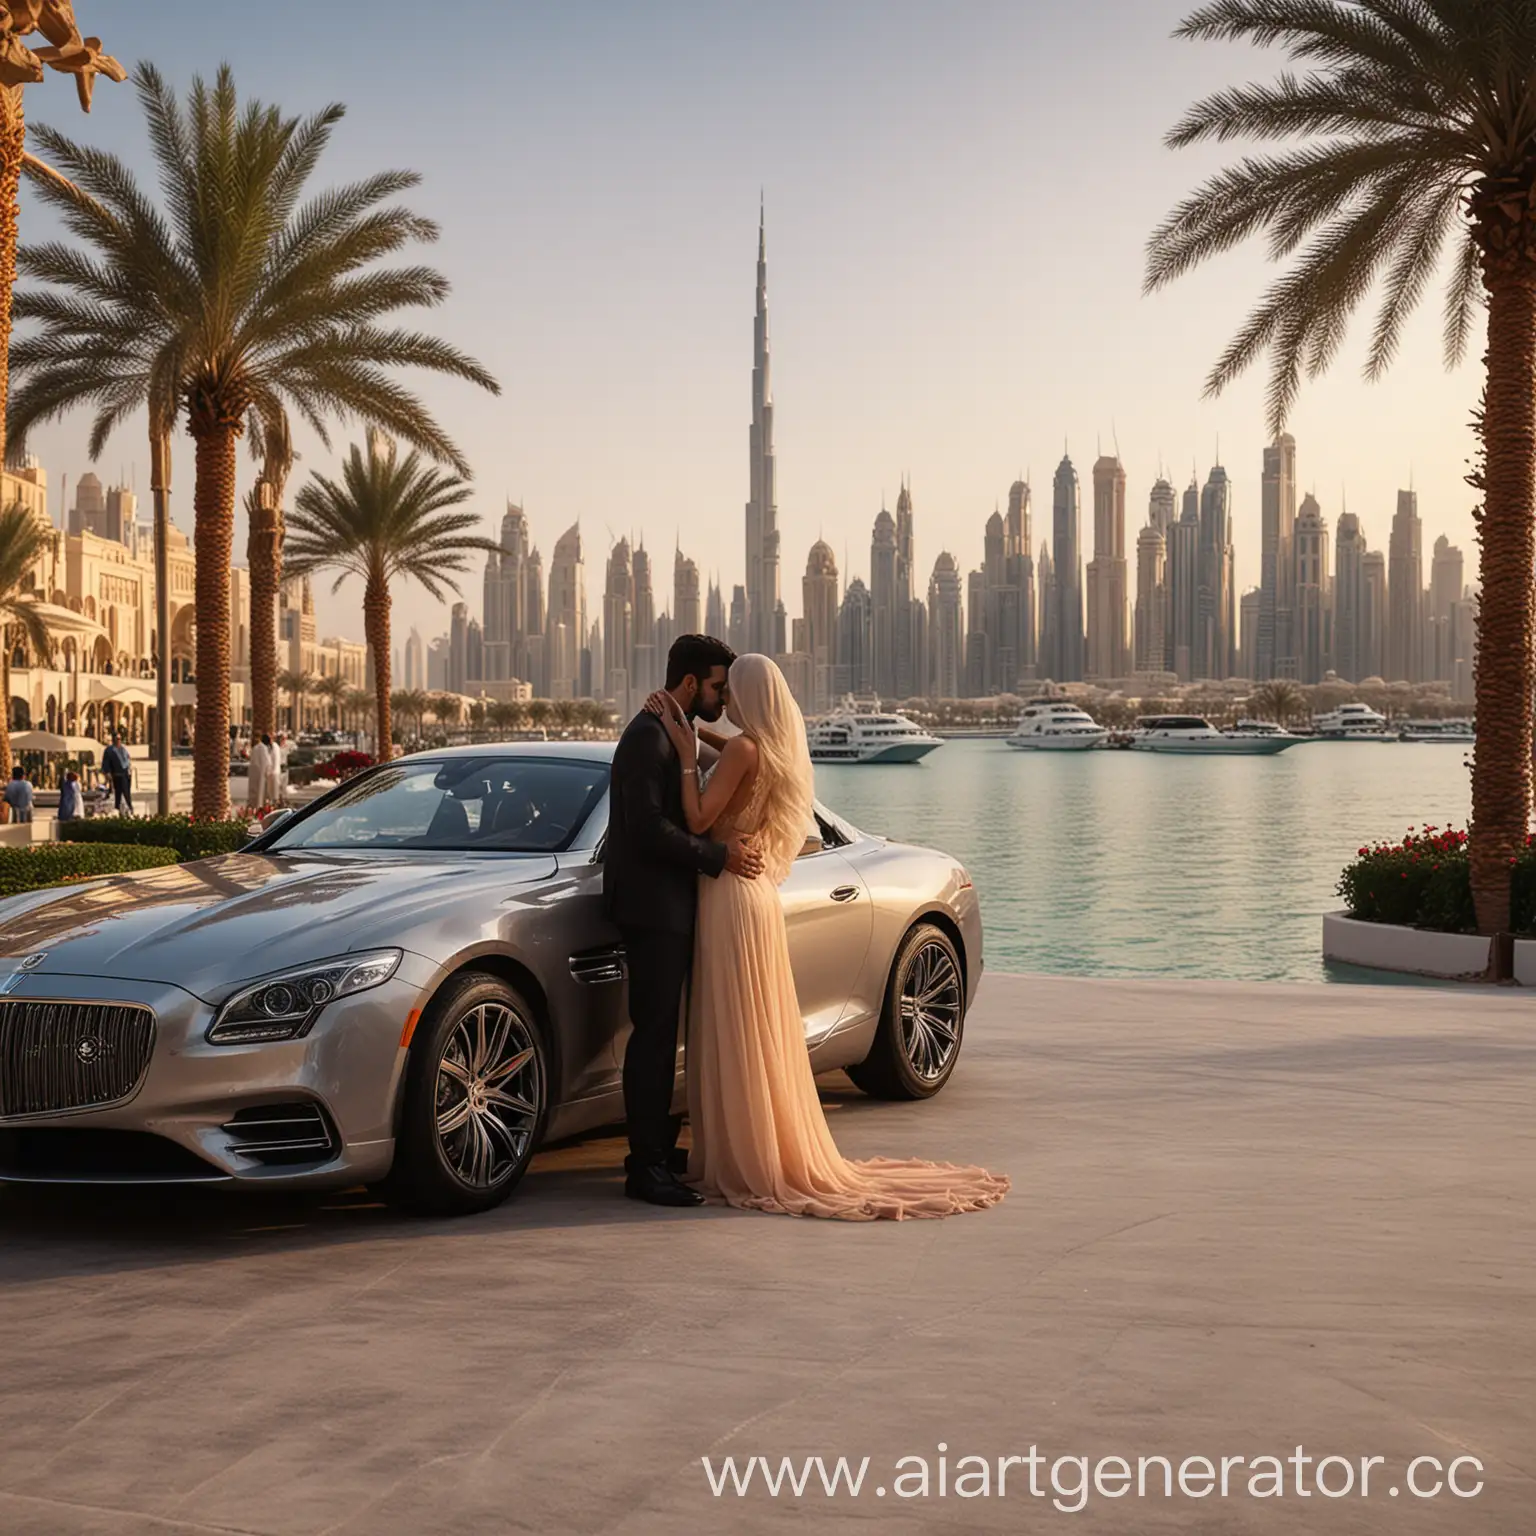 любовь в дубае, реалистичное изображение, на фоне дорогие авто, персидский залив